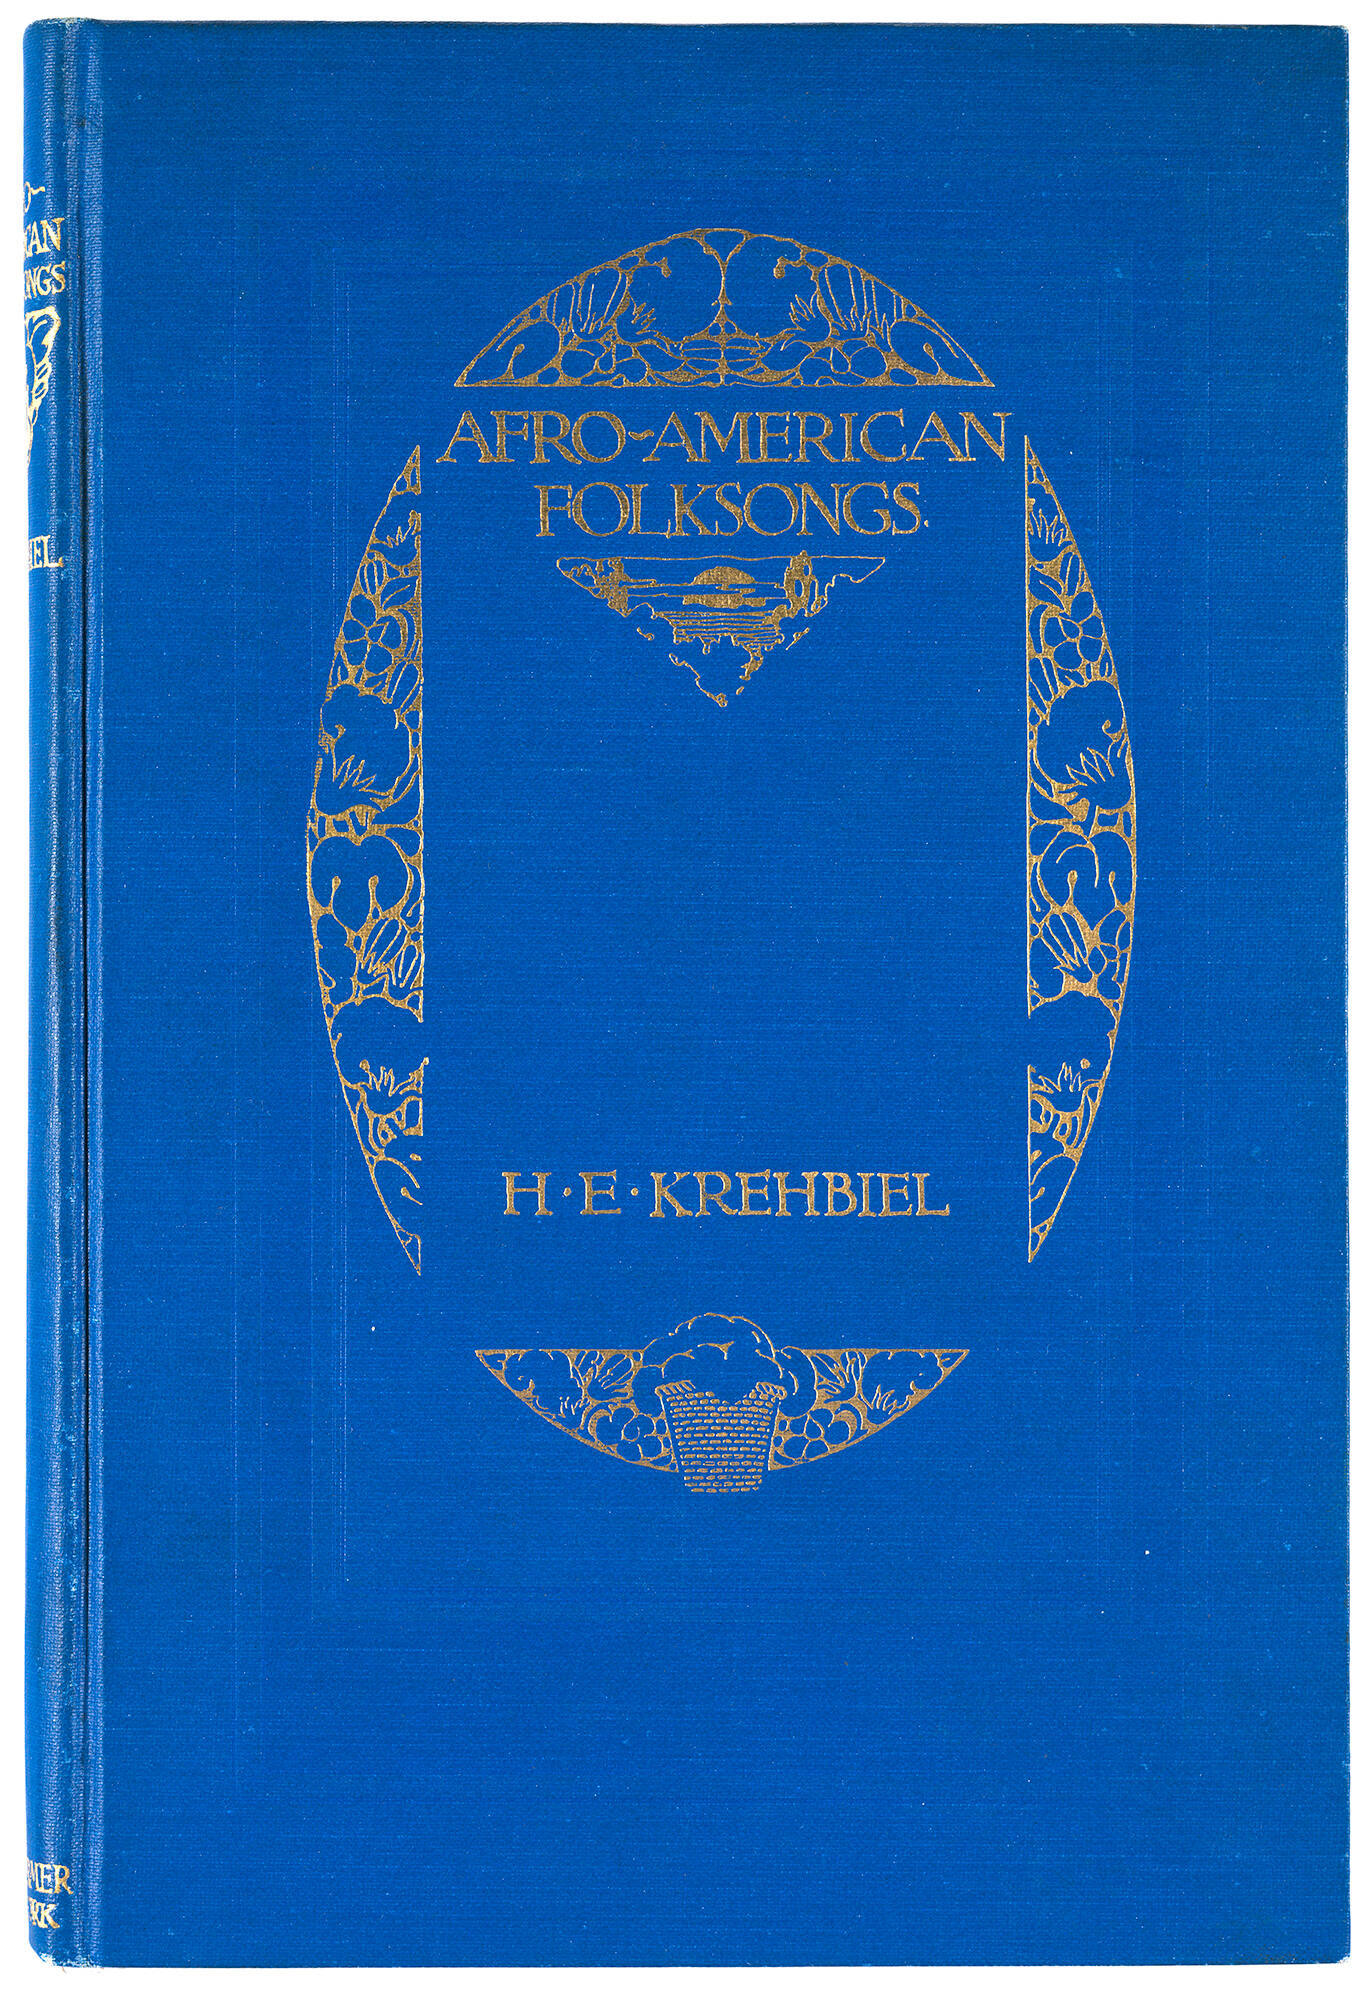 (Ann Arbor, 1854 - 1923, New York)